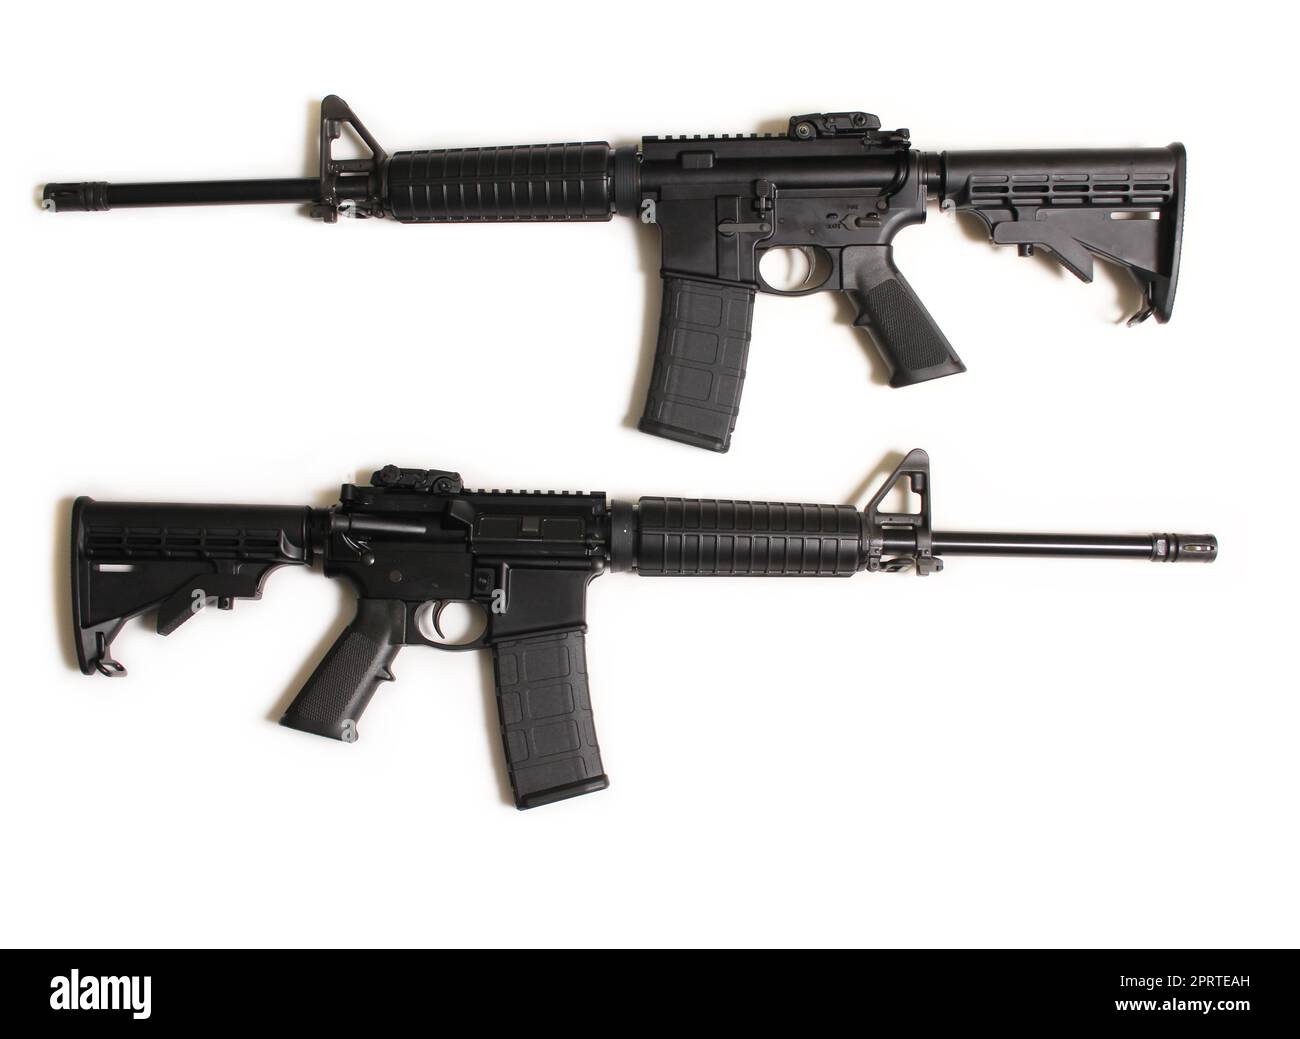 Angriffswaffe vom Typ AR-15 isoliert auf weißem Hintergrund, Seitenansicht links und rechts Stockfoto